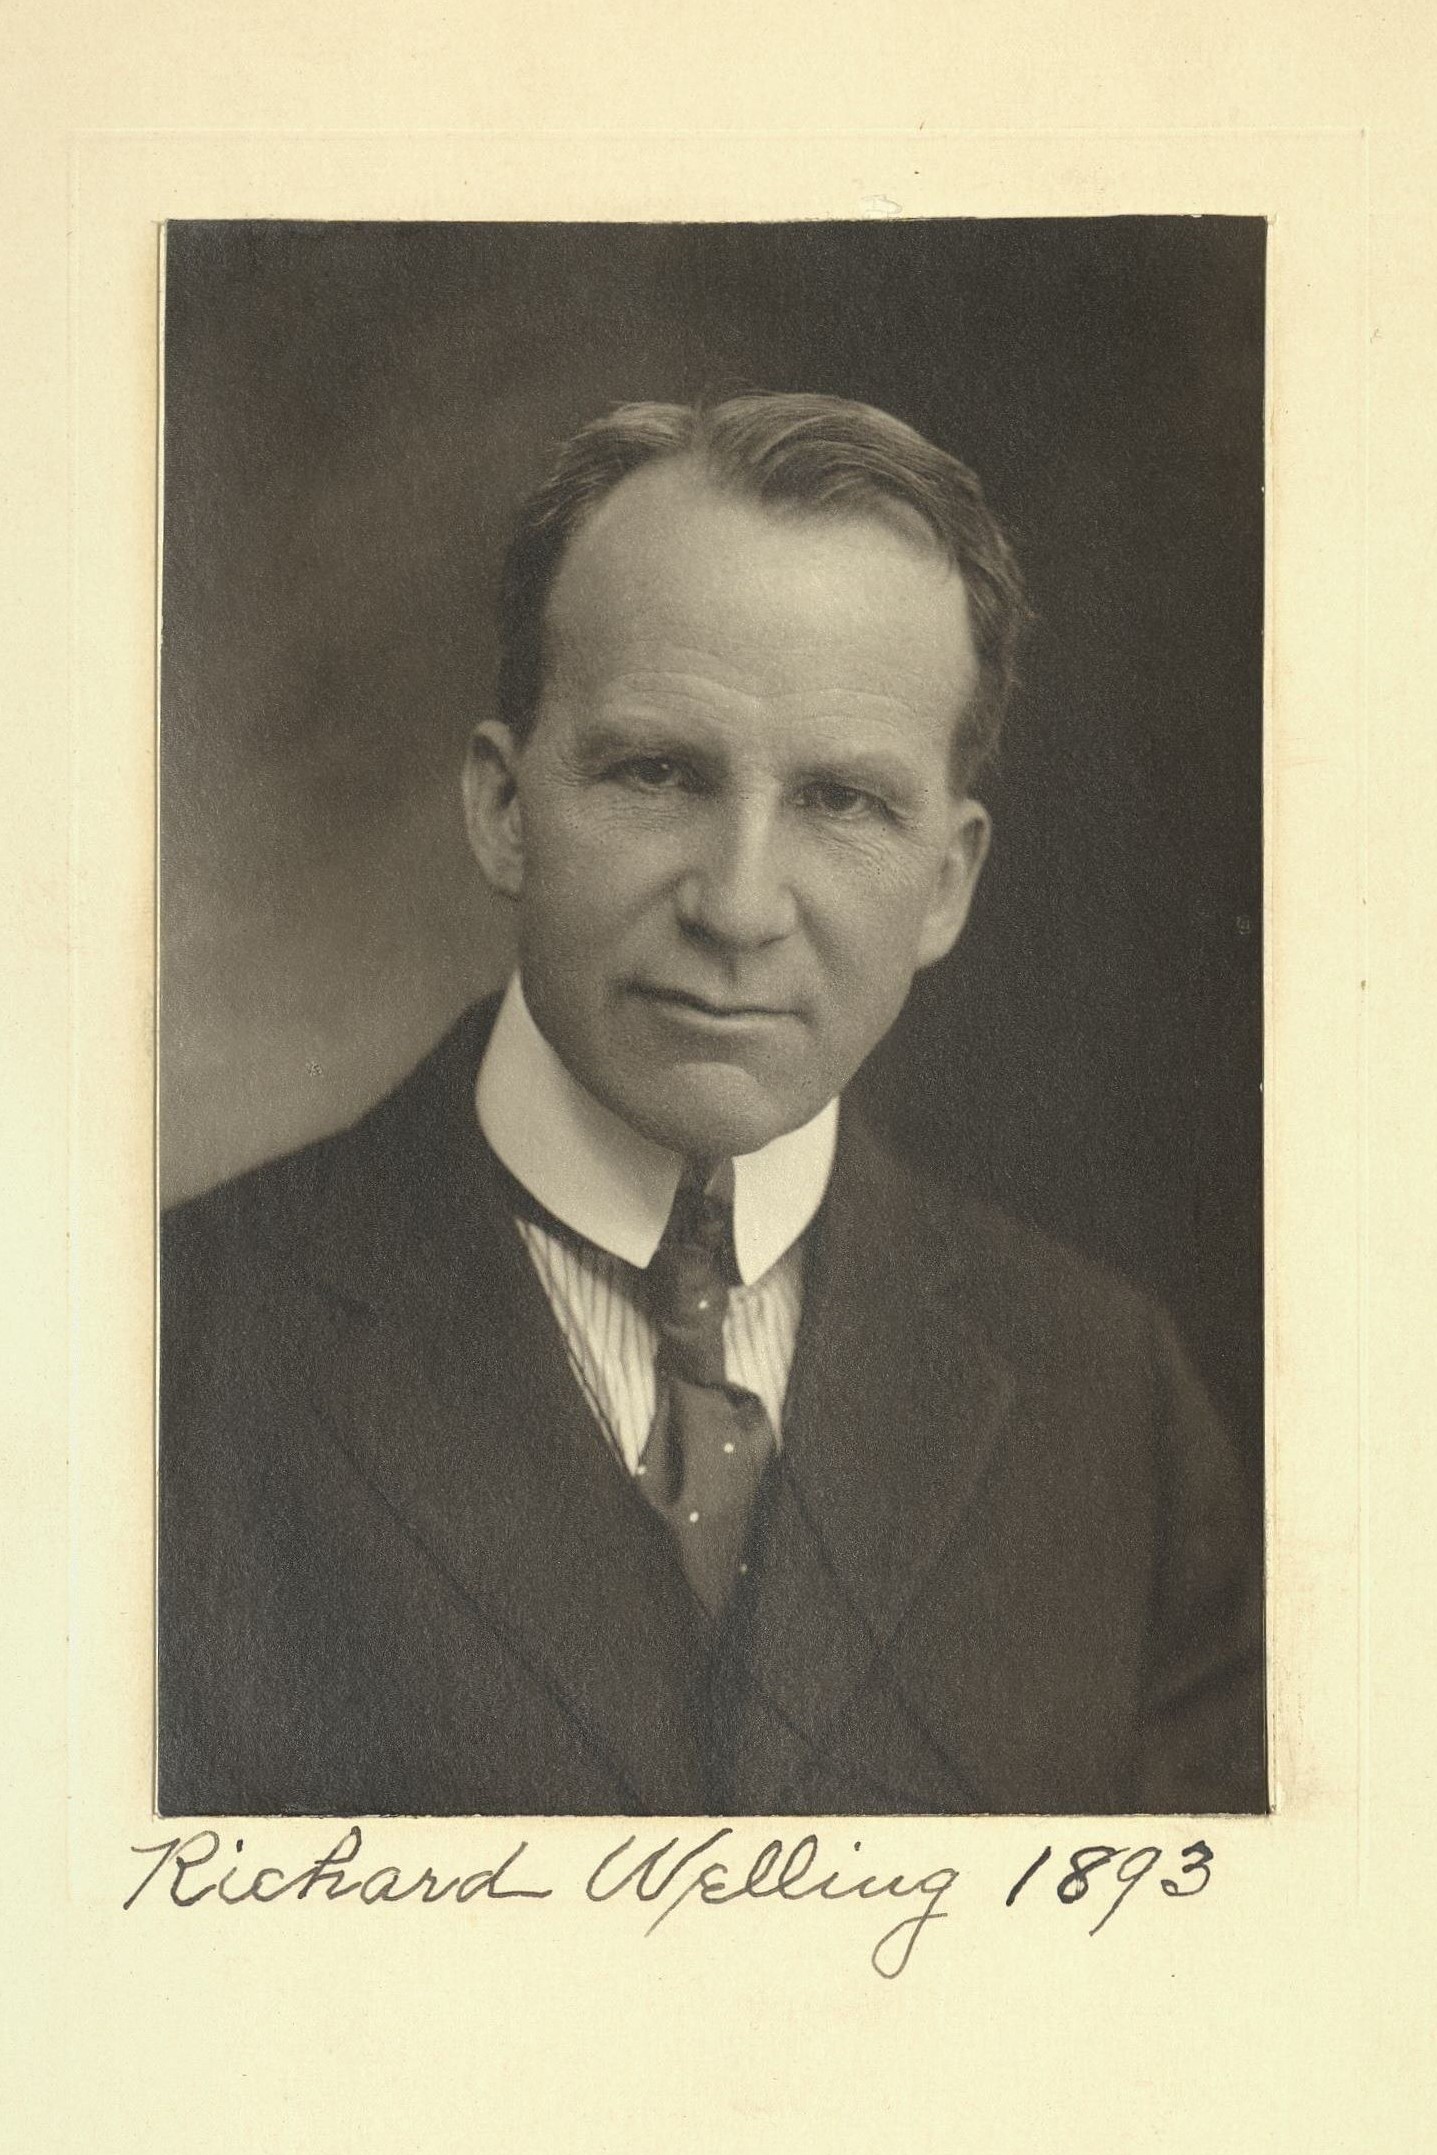 Member portrait of Richard W. G. Welling